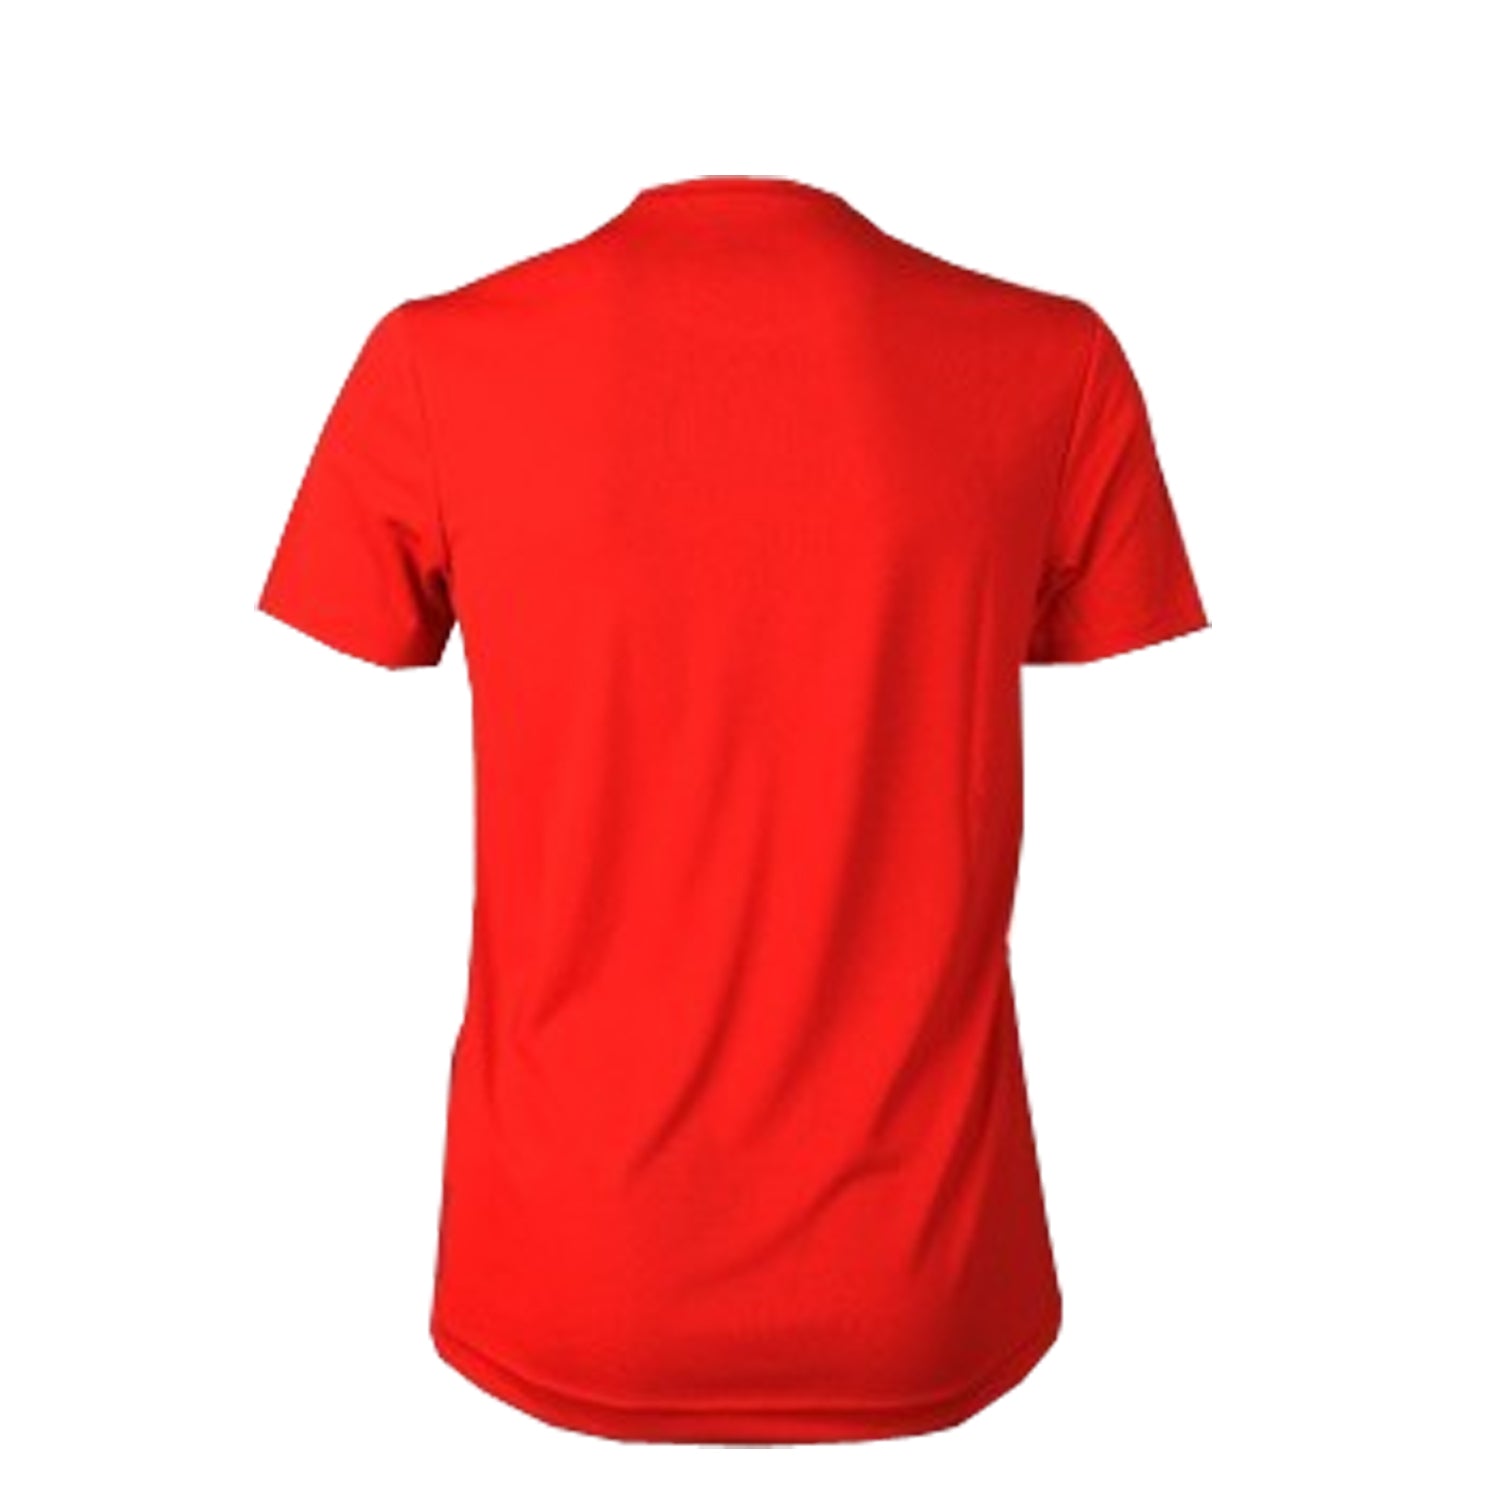 Yonex 2317 Easy22 Junior Round Neck T-Shirt - Best Price online Prokicksports.com